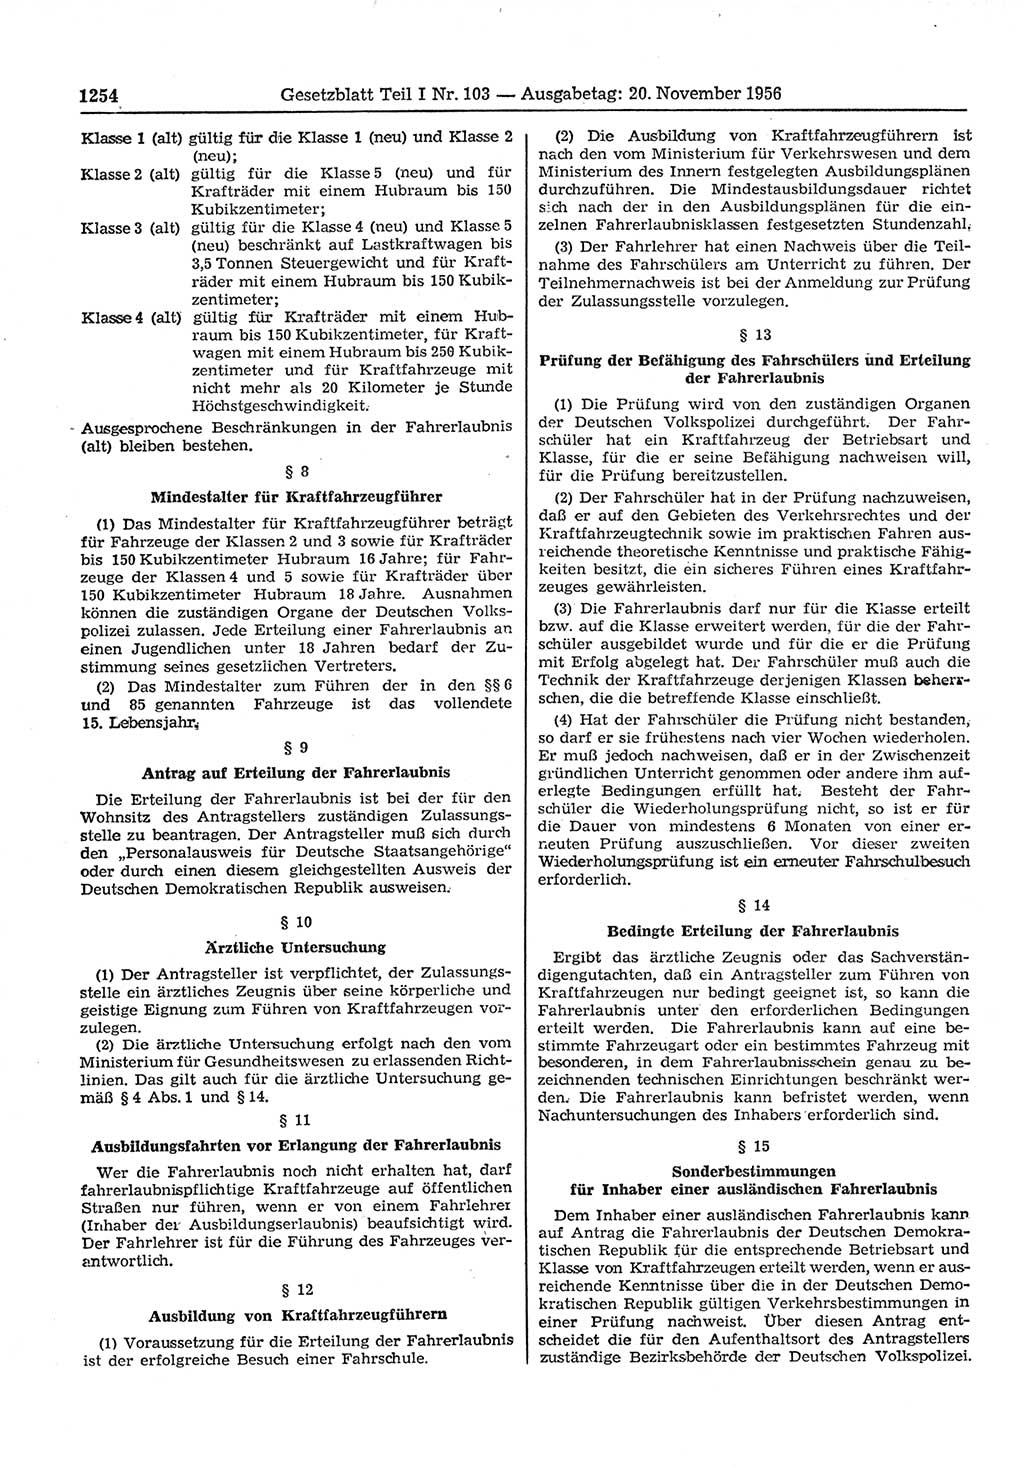 Gesetzblatt (GBl.) der Deutschen Demokratischen Republik (DDR) Teil Ⅰ 1956, Seite 1254 (GBl. DDR Ⅰ 1956, S. 1254)